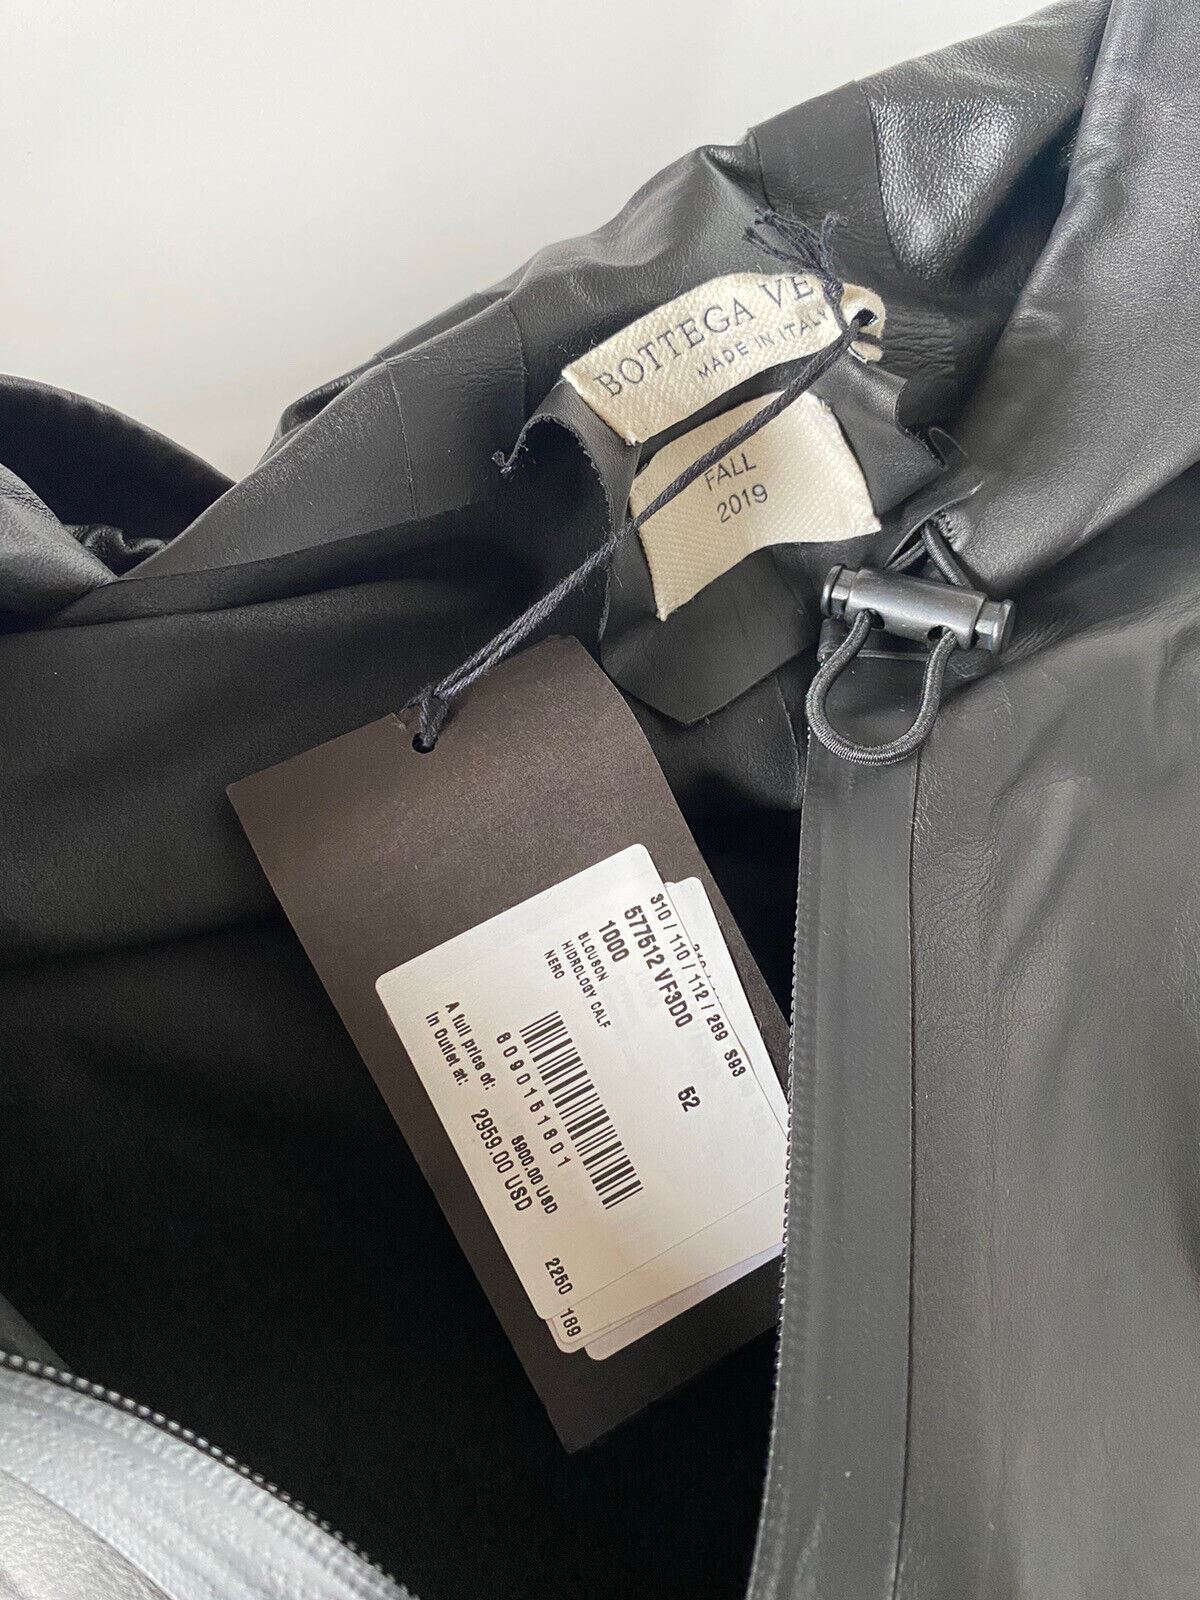 NWT $5900 Bottega Veneta Мужская легкая куртка из телячьей кожи с капюшоном Черная 42 США